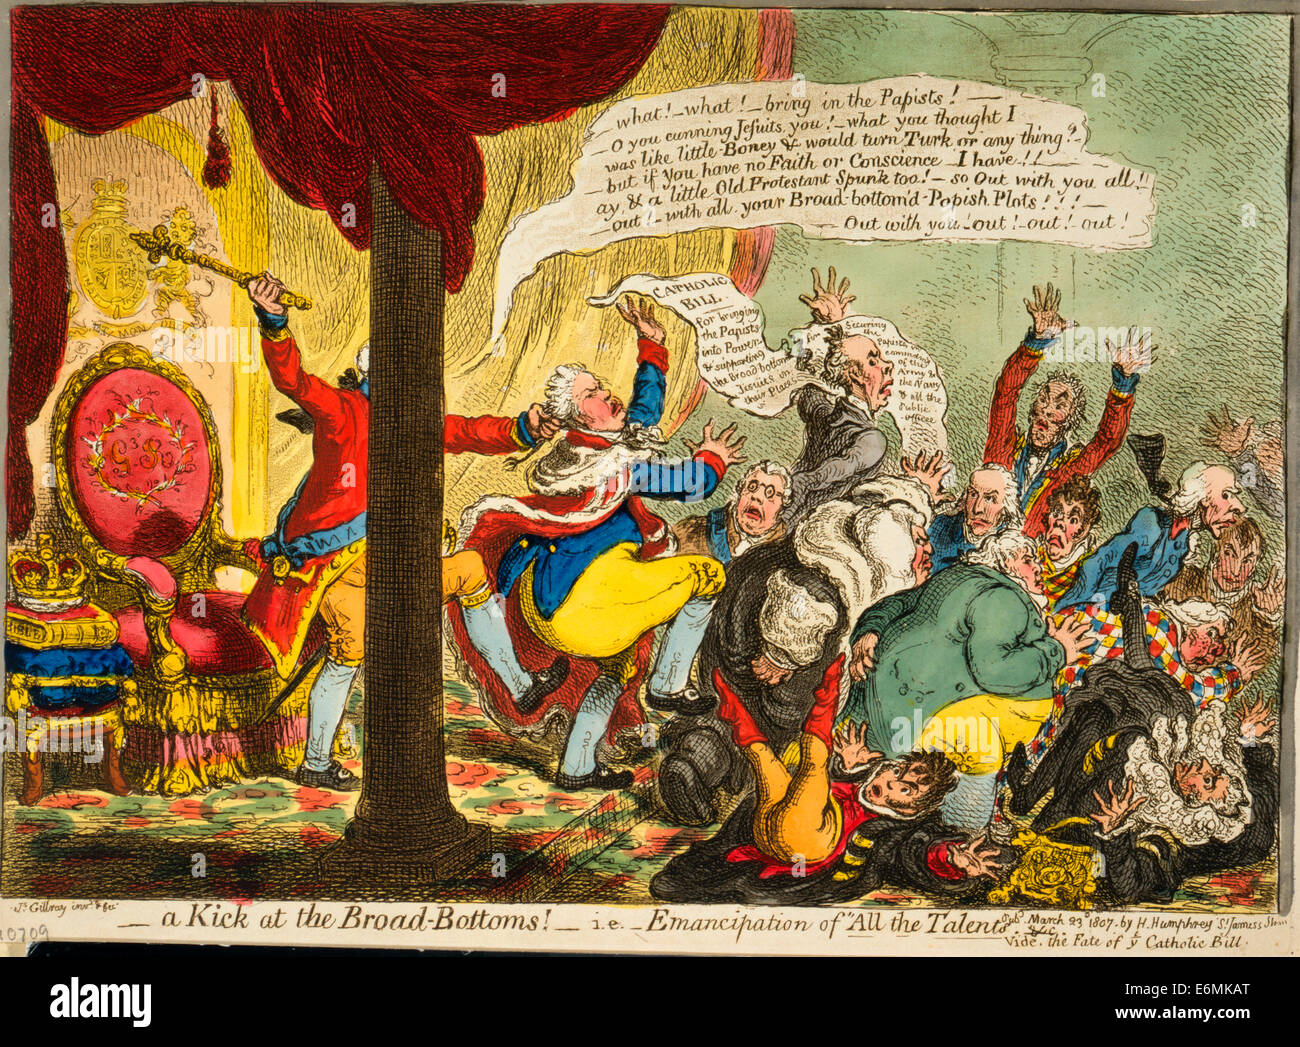 Un coup de pied au fond large ! - C.-à-d 'émancipation de tous les talents". Caricature politique, 1807 Banque D'Images